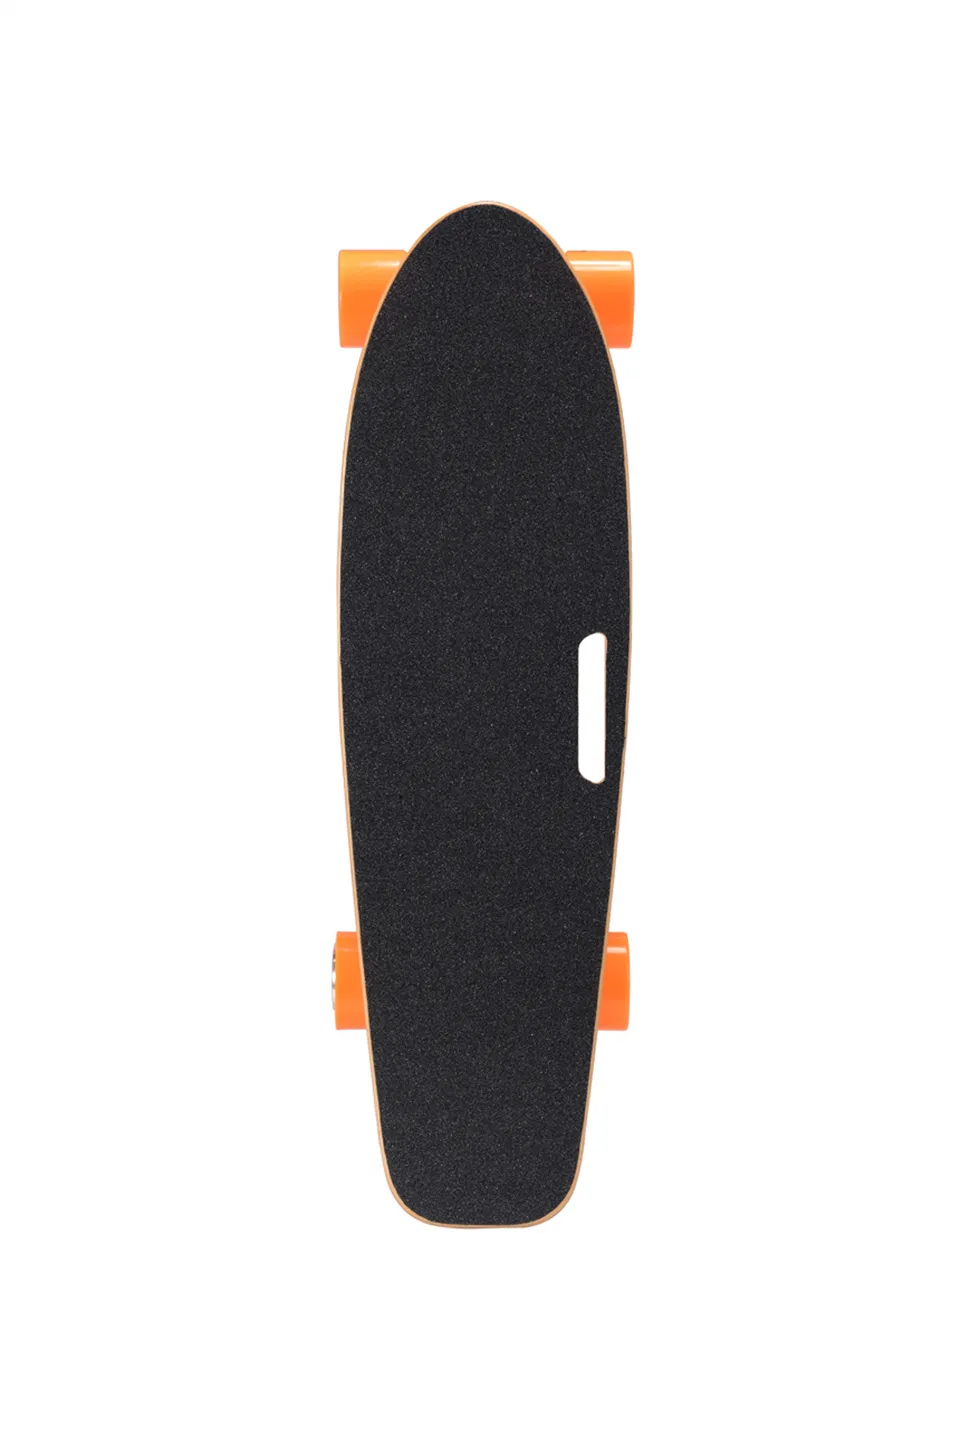 Motor de skate do skate de Longboard elétrico com controle remoto Bateria embutida da bateria de lítio